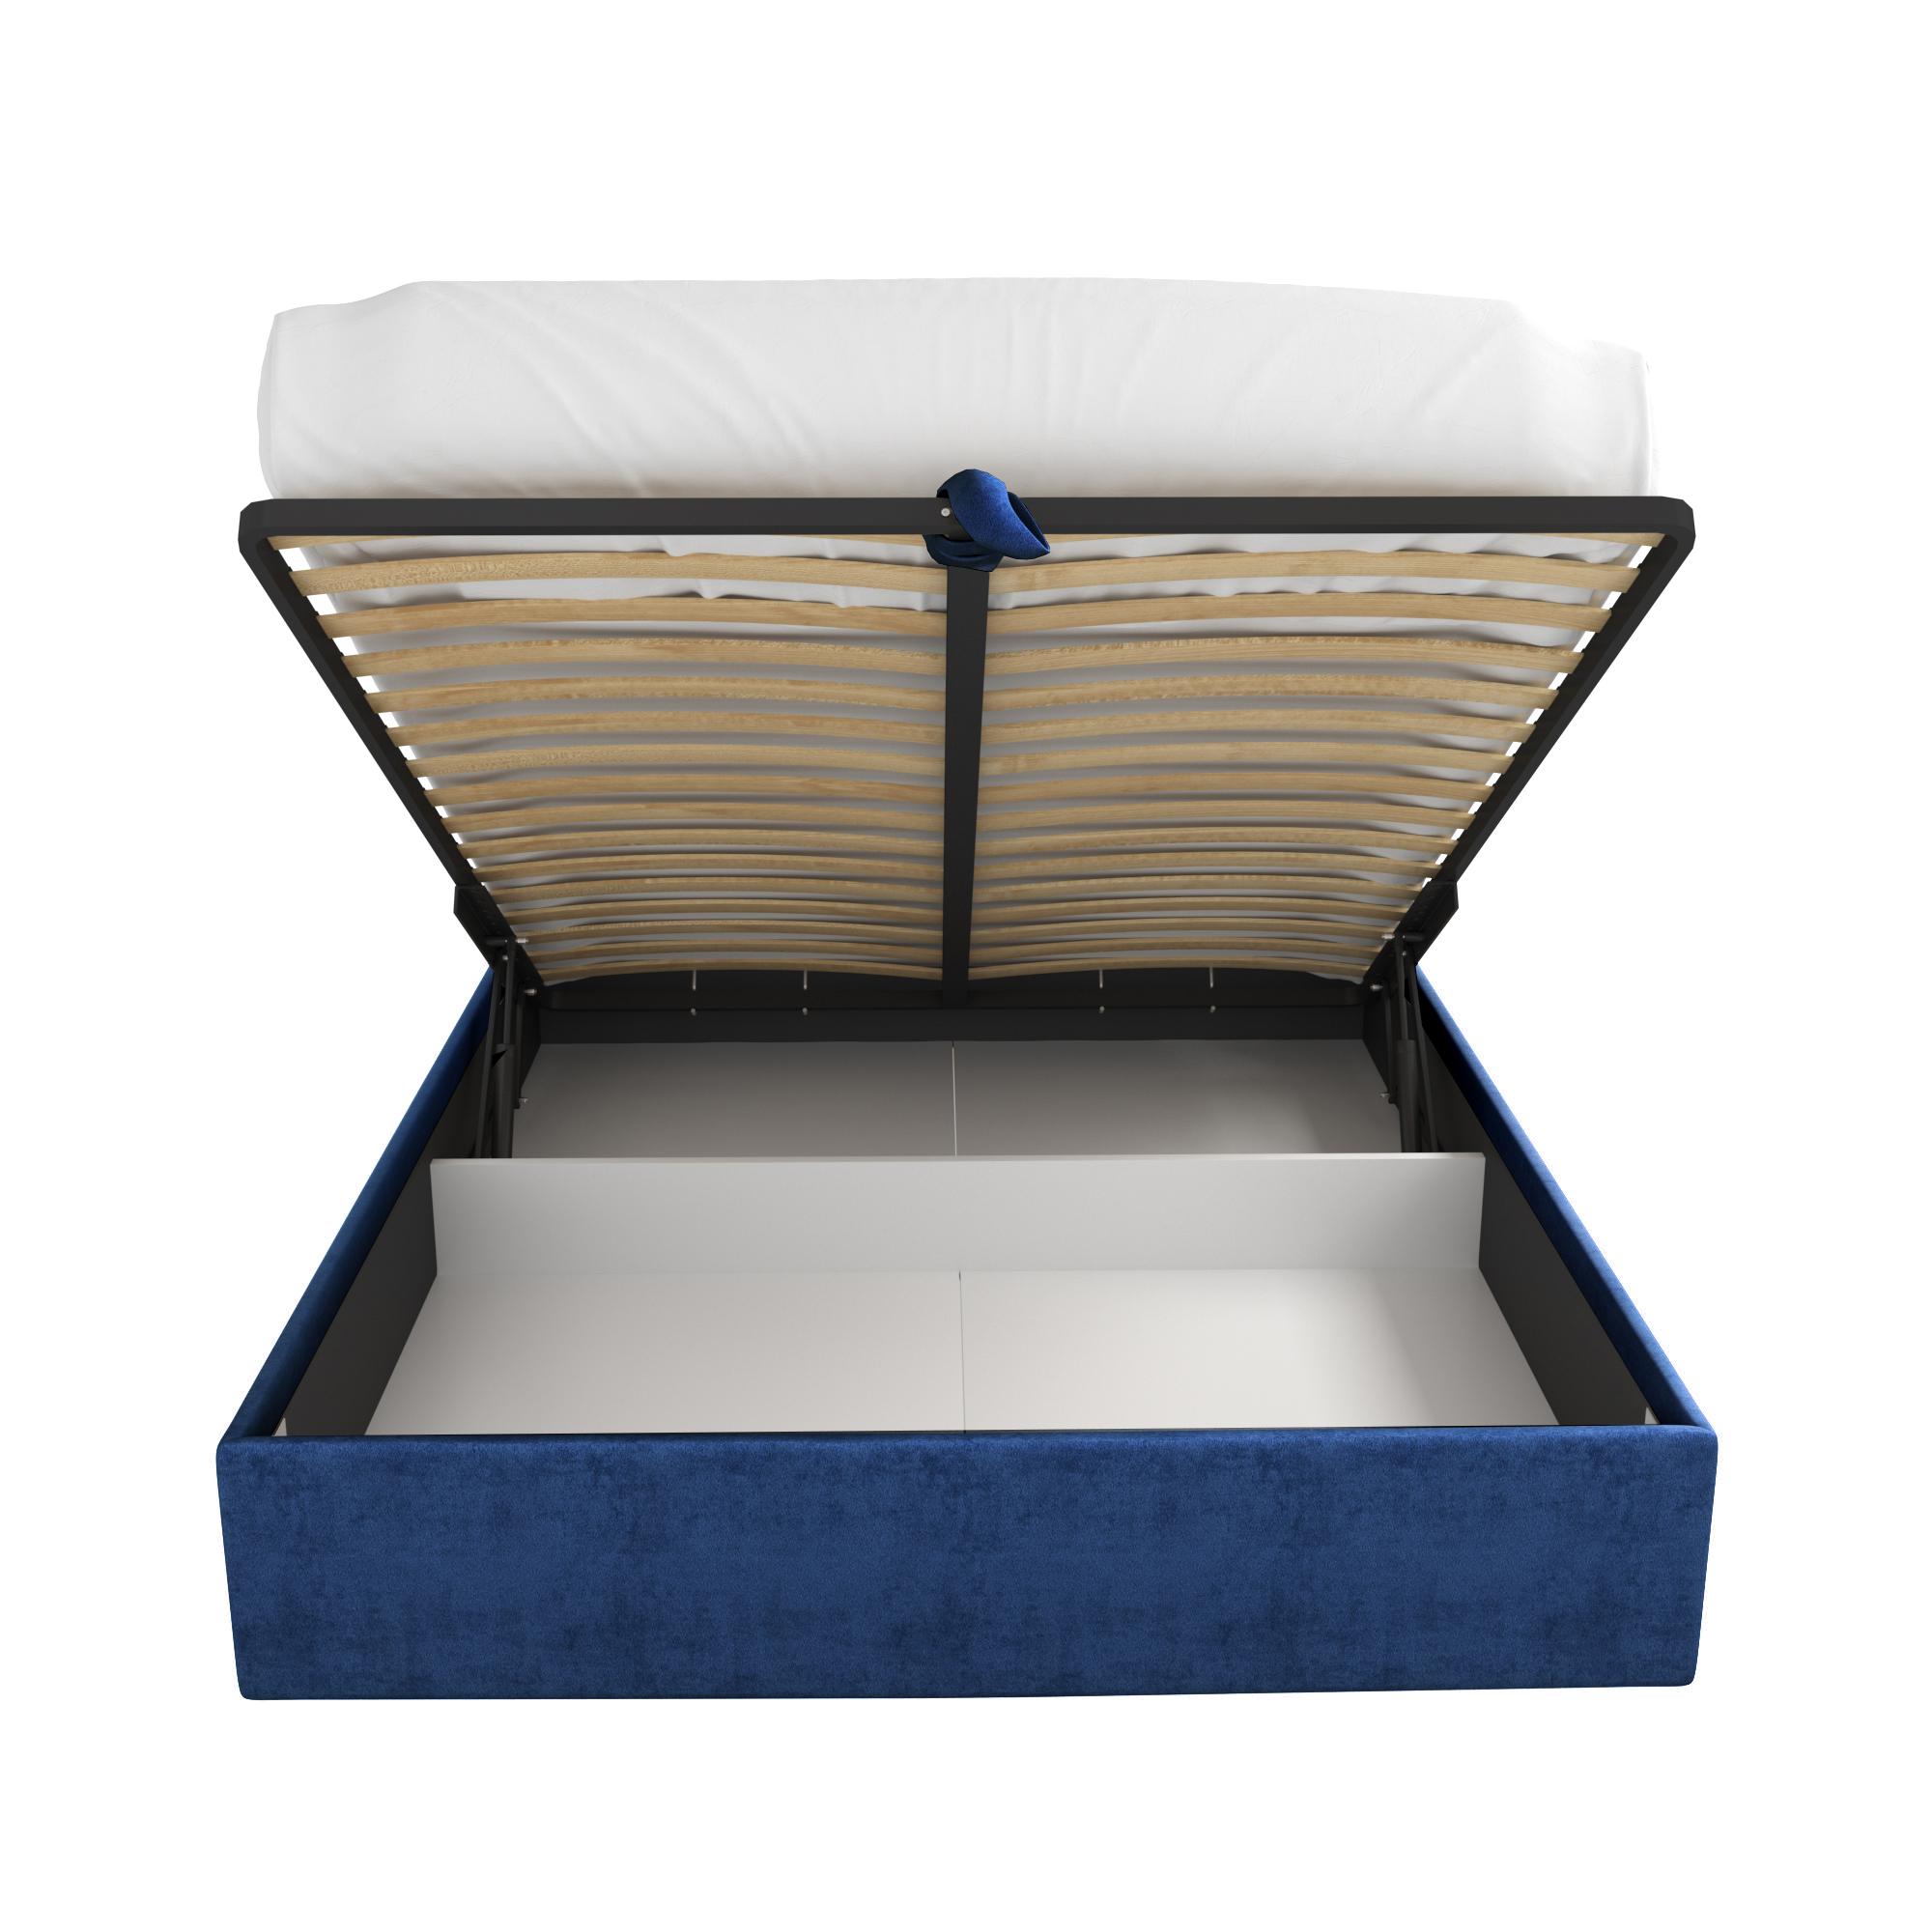 Кровать Бриэль синяя 180х200 изображение товара